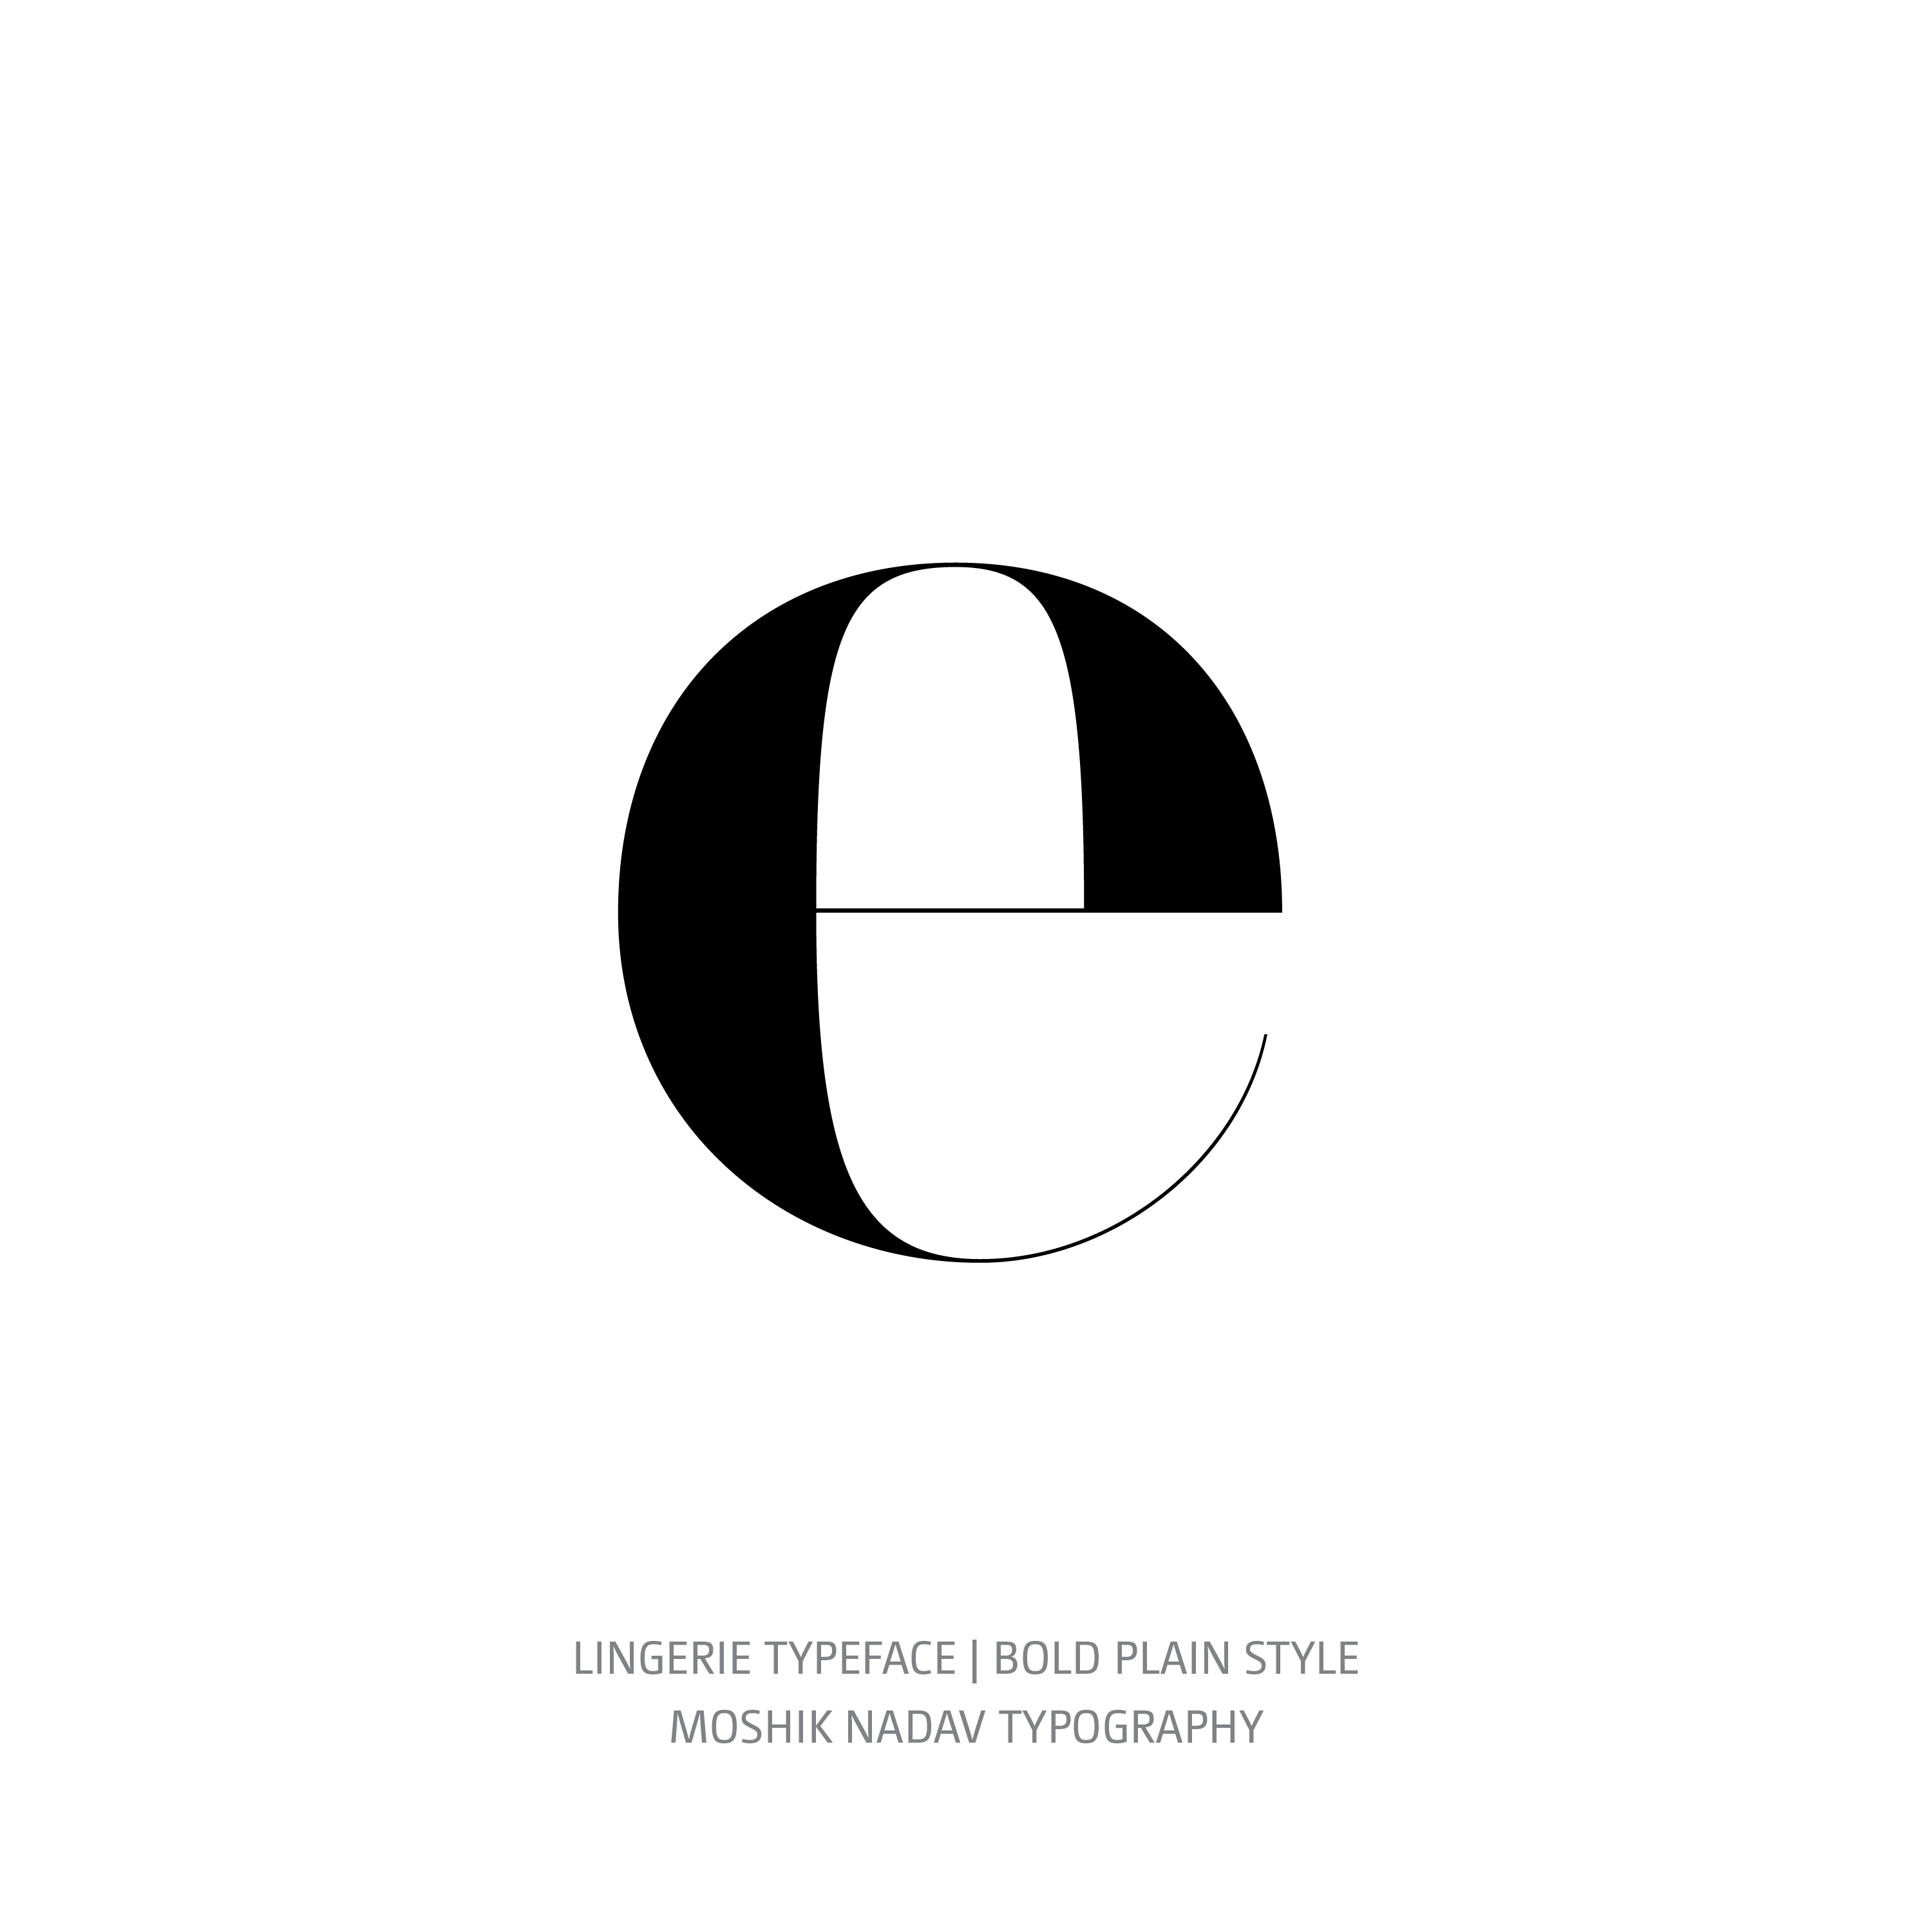 Lingerie Typeface Bold Plain e